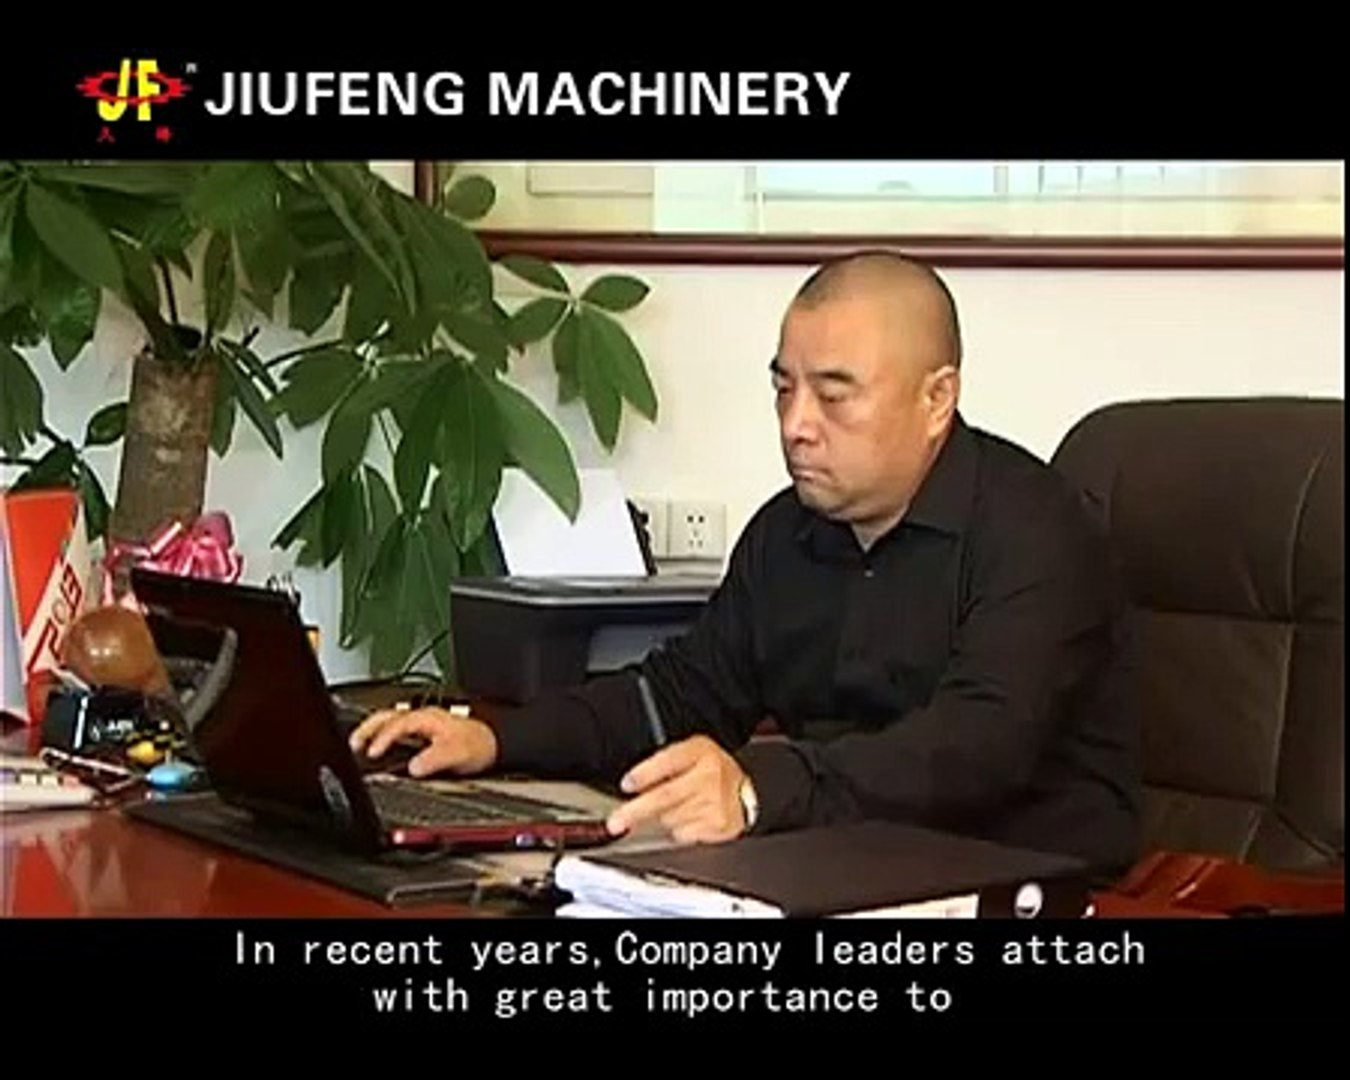 J.F. Printing Machine from China, Technology Taiwan.